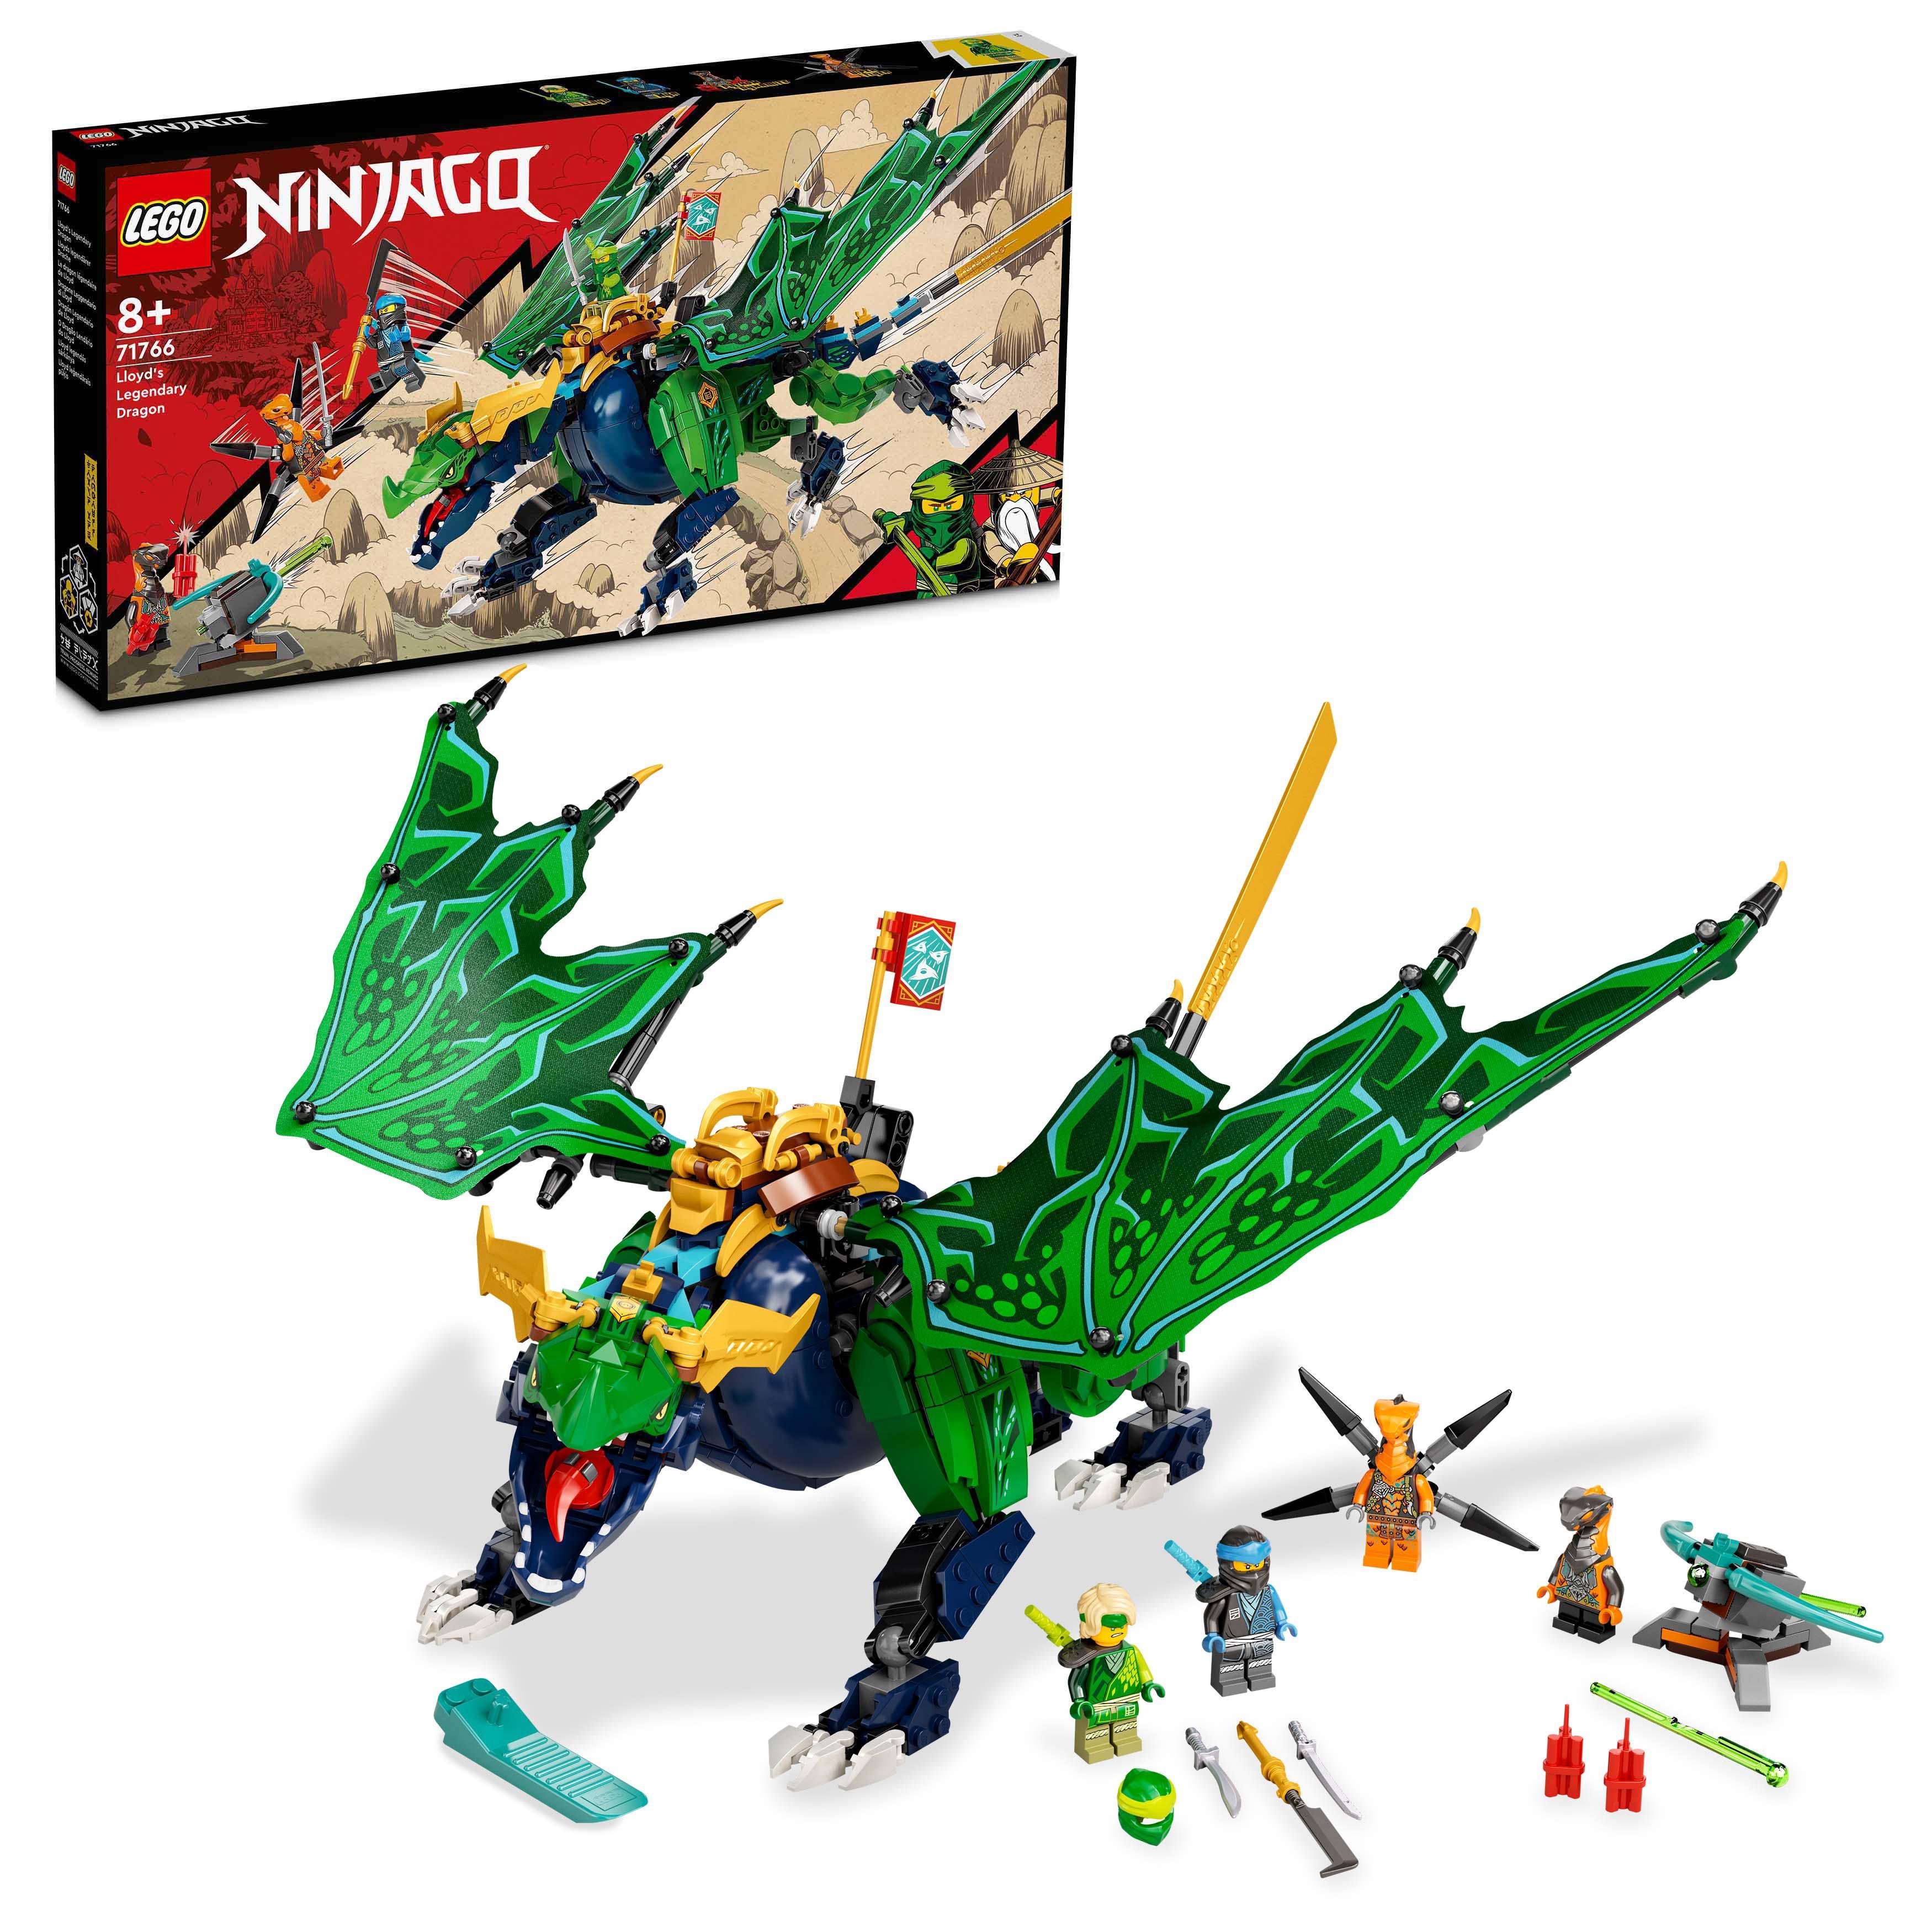 Lego 71766 Ninjago img 2